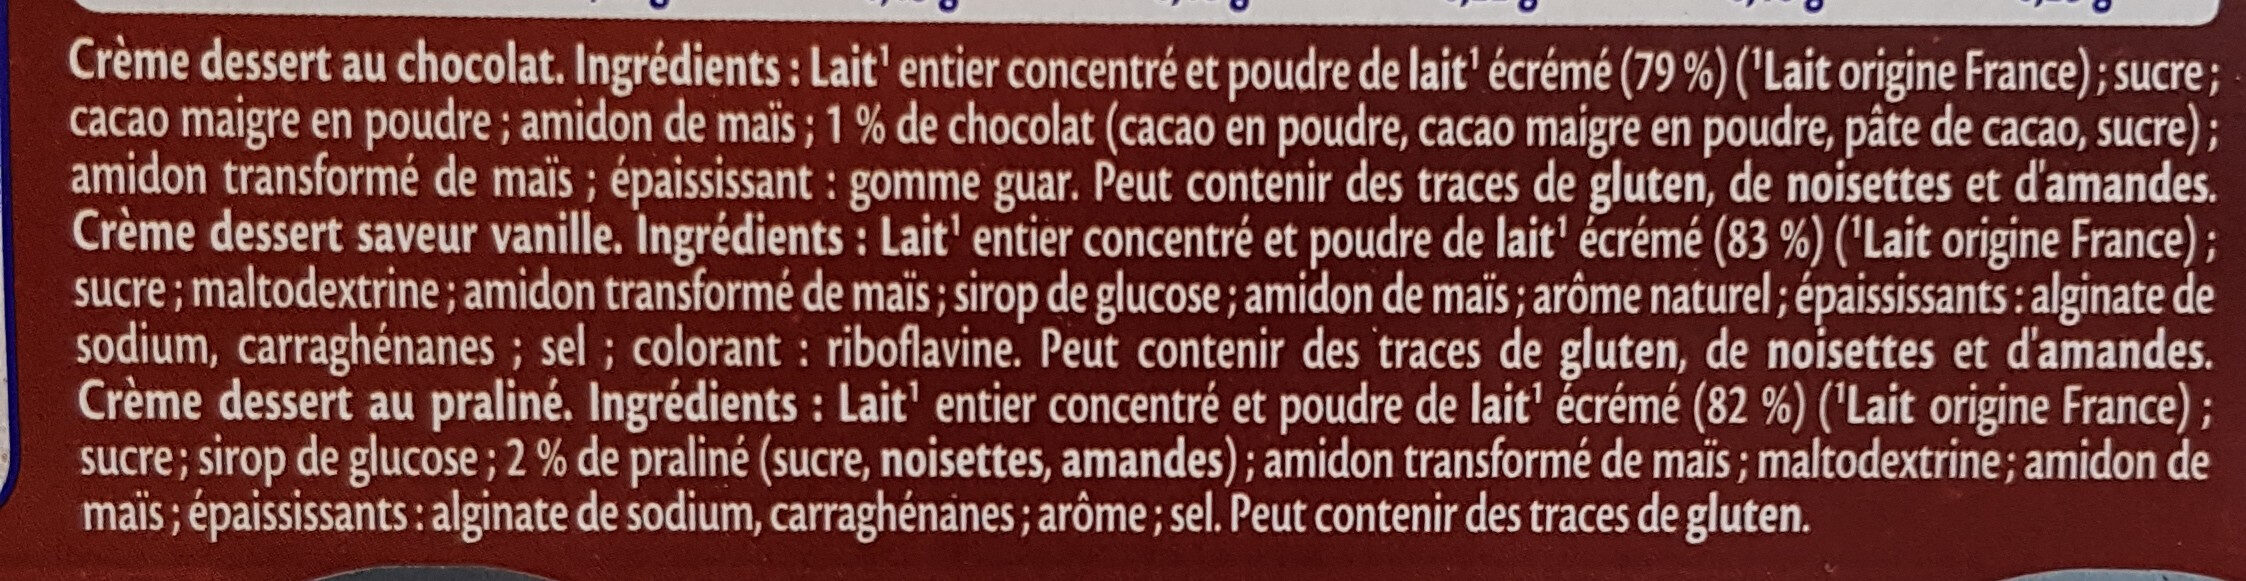 Crème Dessert Multi Variétés Saveur Vanille/Chocolat/Praliné - Ingrédients - fr